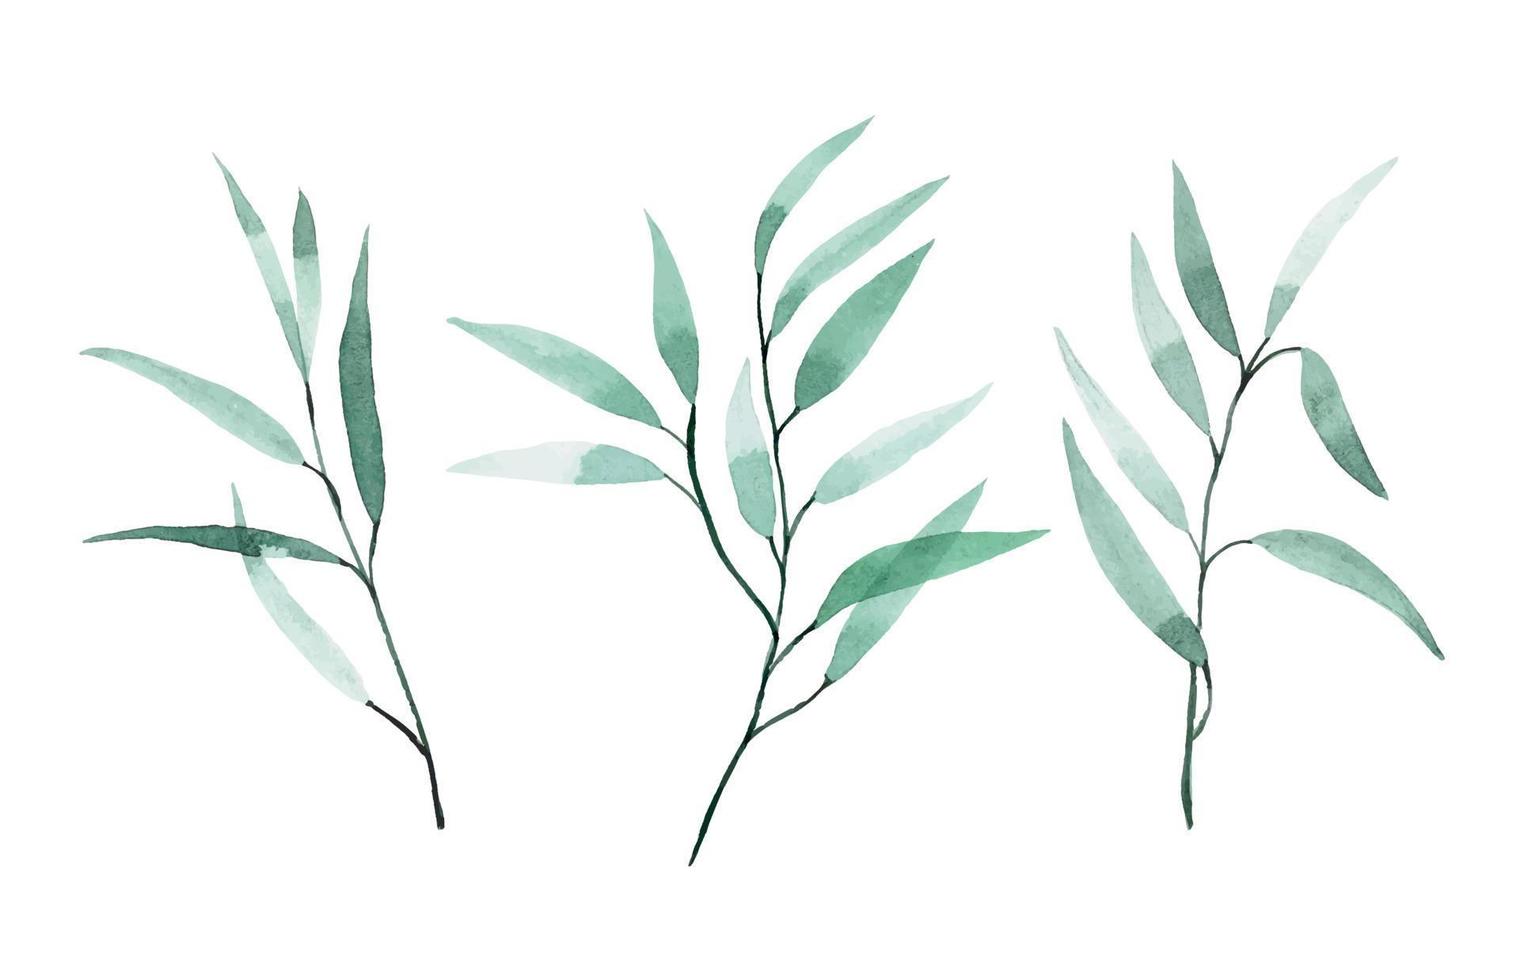 disegno ad acquerello. set di foglie di eucalipto. foglie verdi tropicali isolate su sfondo bianco elegante in stile vintage. vettore